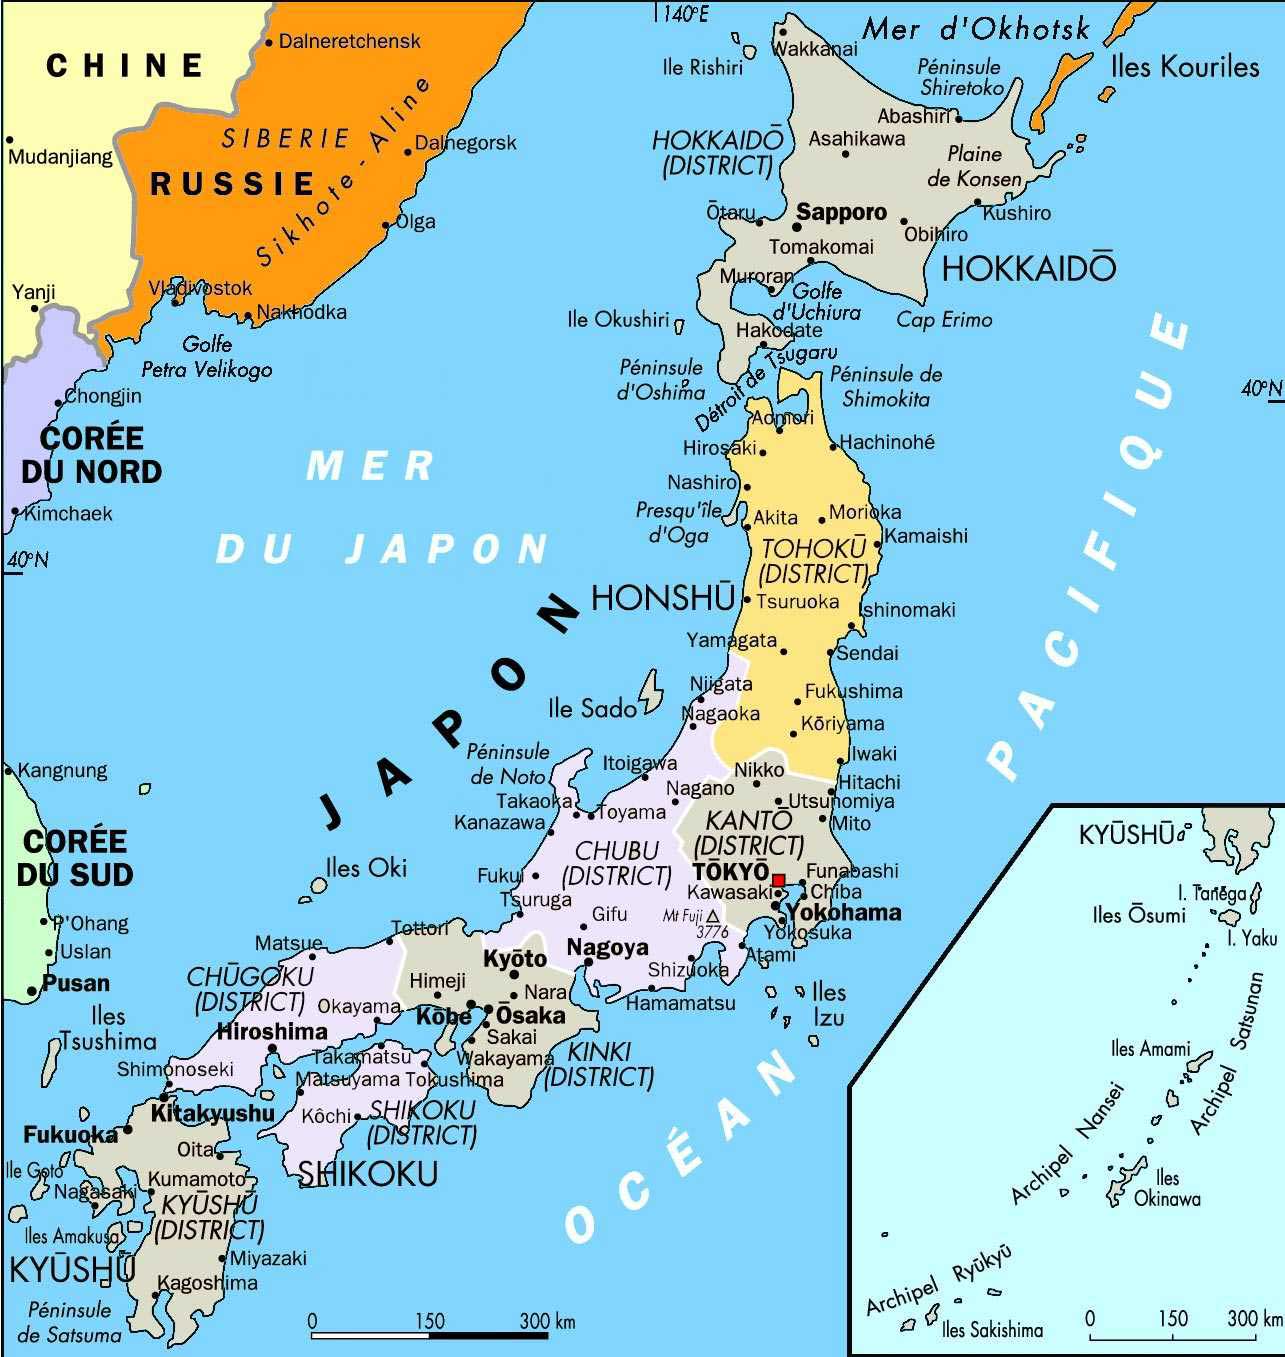 زمين لرزه 5.7 ريشتري در ژاپن